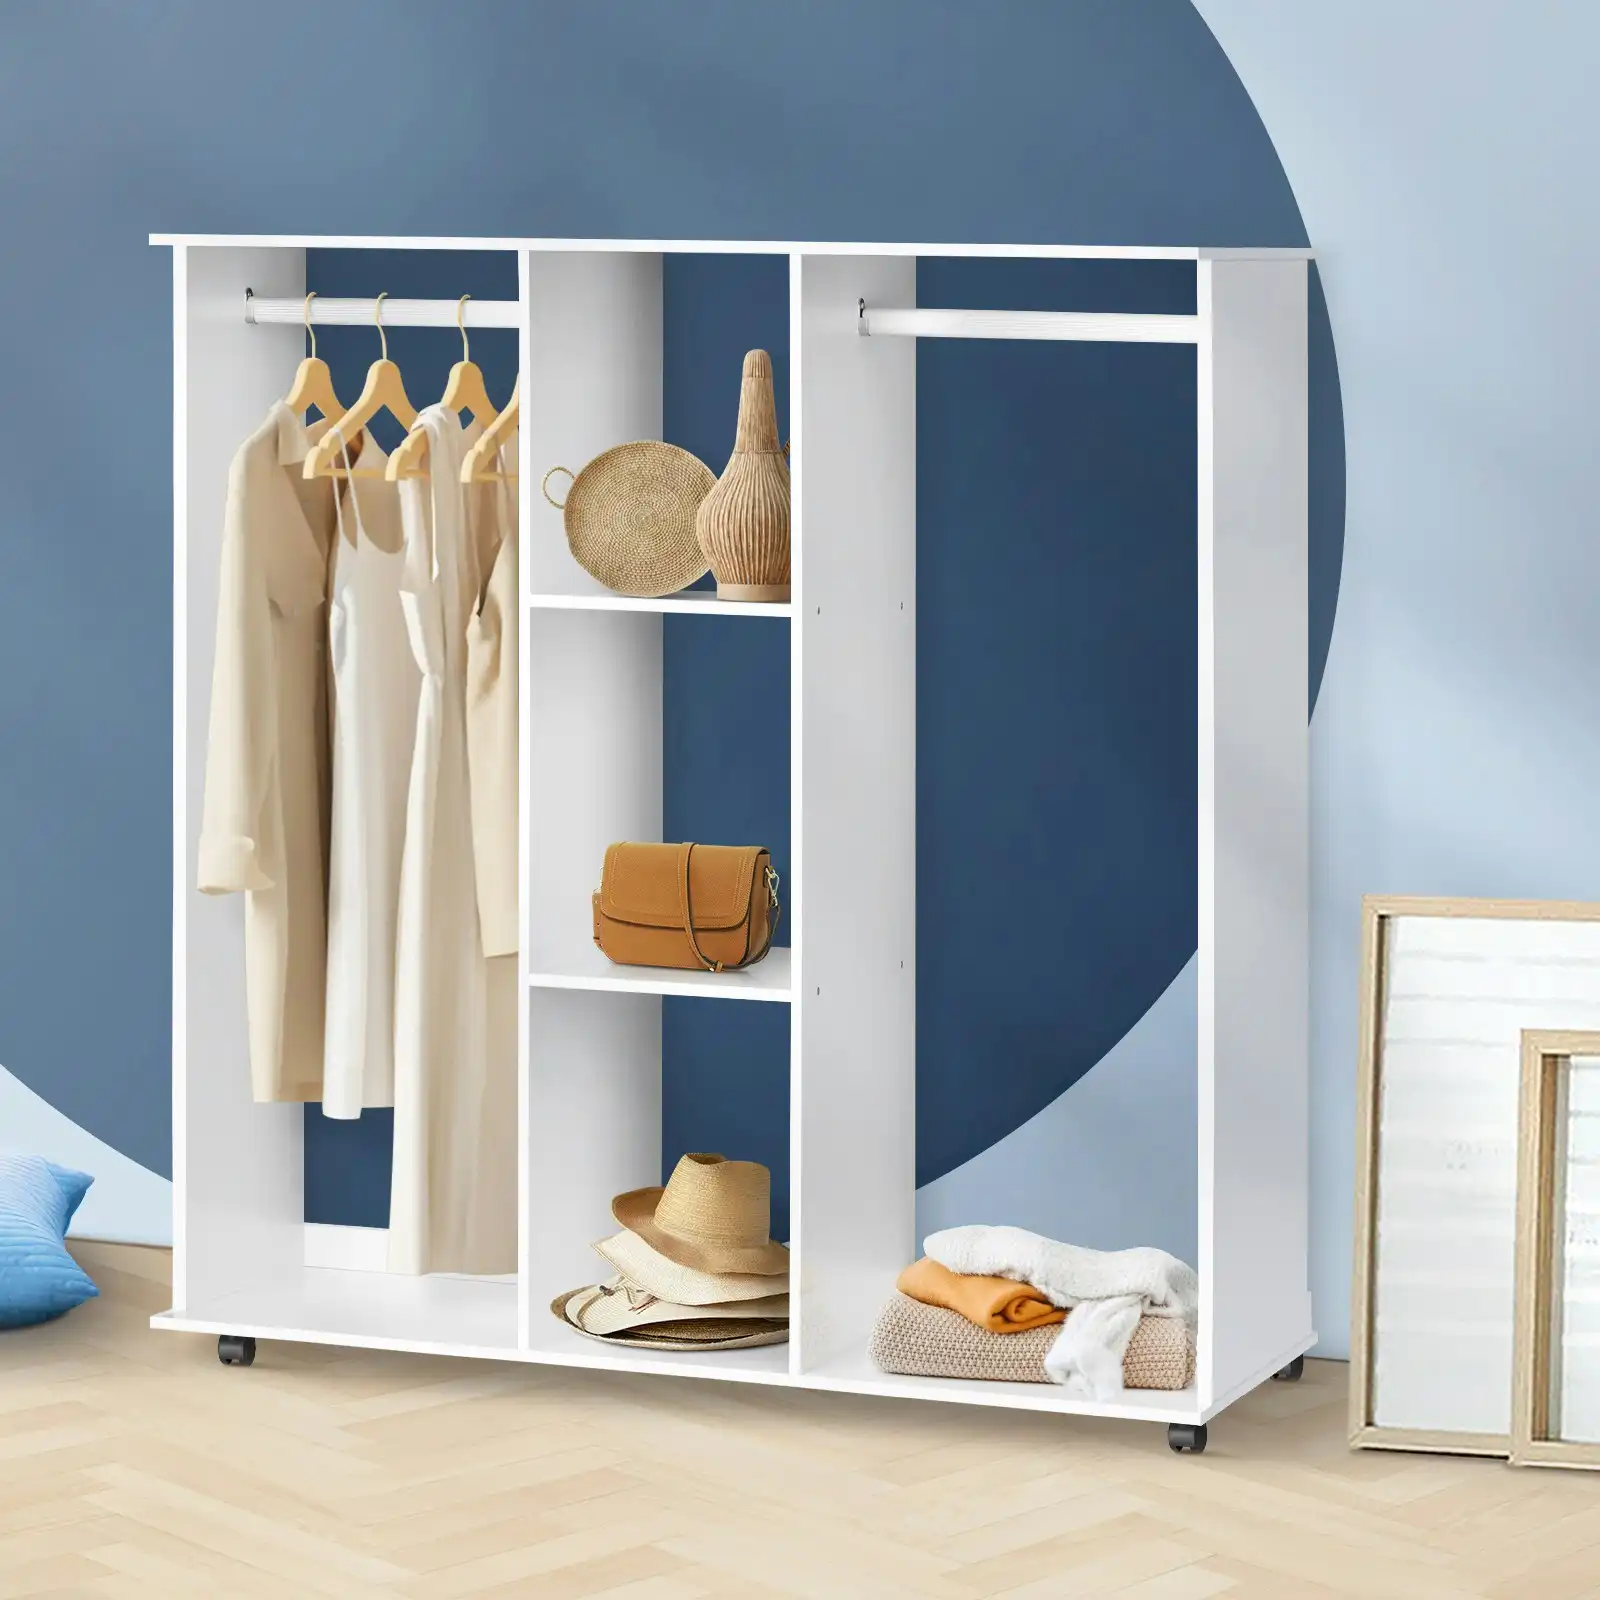 Oikiture Portable Double Wardrobe Storage Shelves Organizer Clothes Rack Hanger